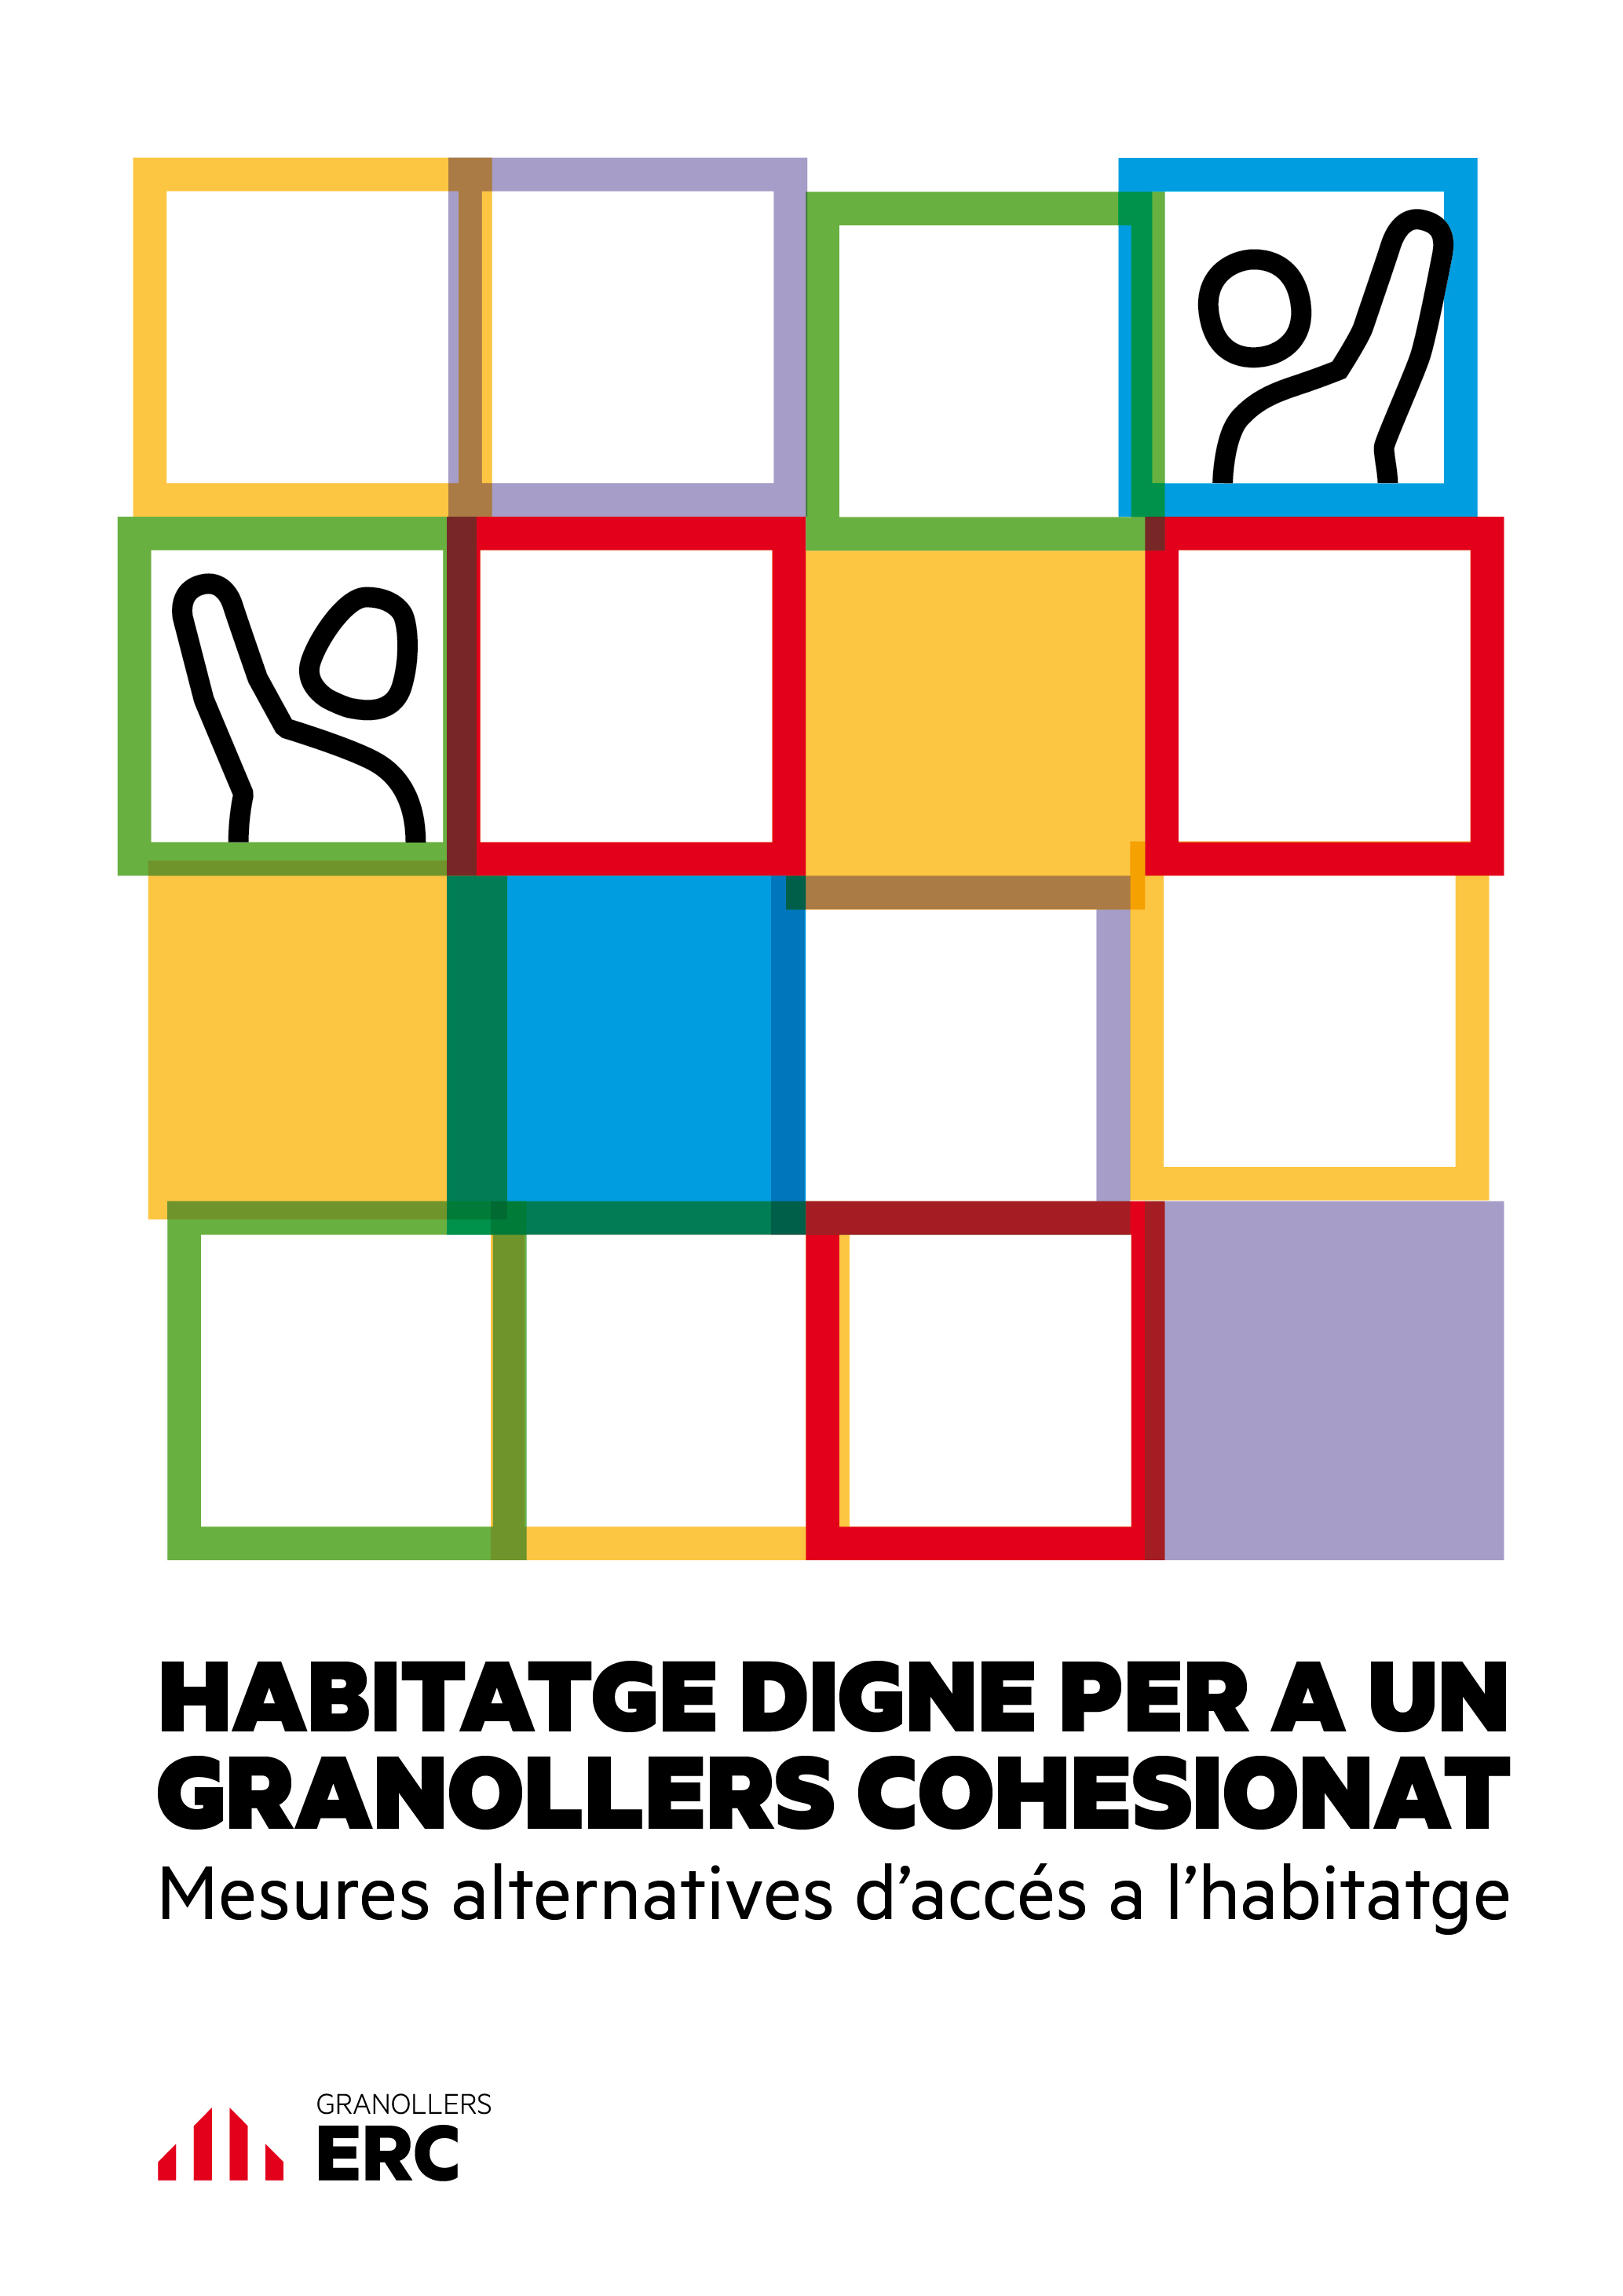 El cartell de la campanya d'ERC